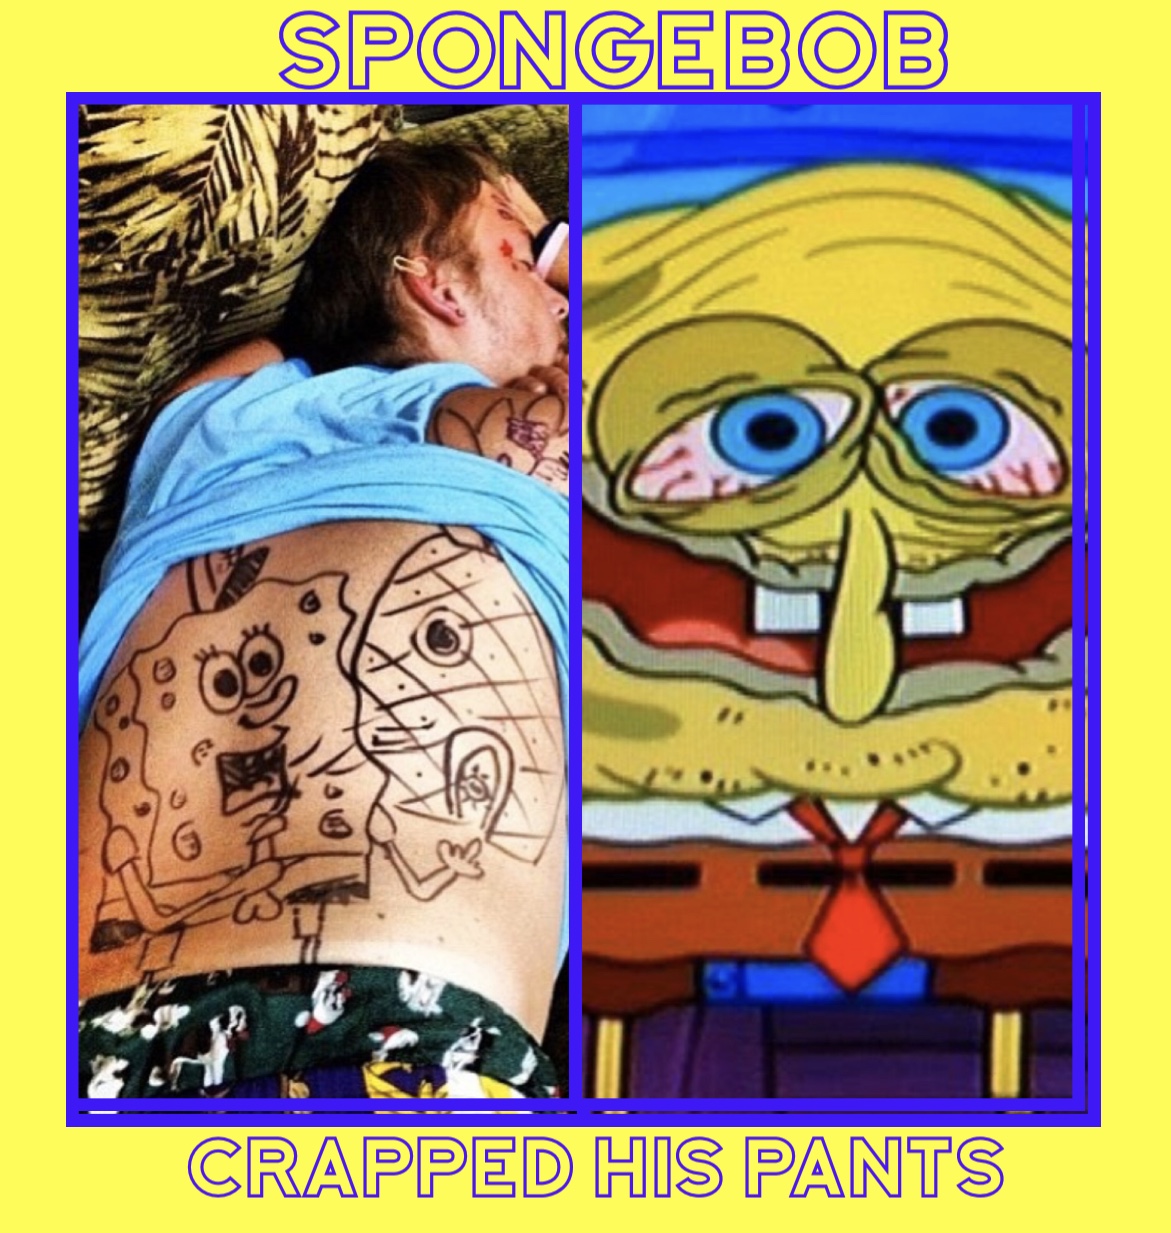 you get 2 hours of sleep spongebob meme - Spongebob Crapped His Pants